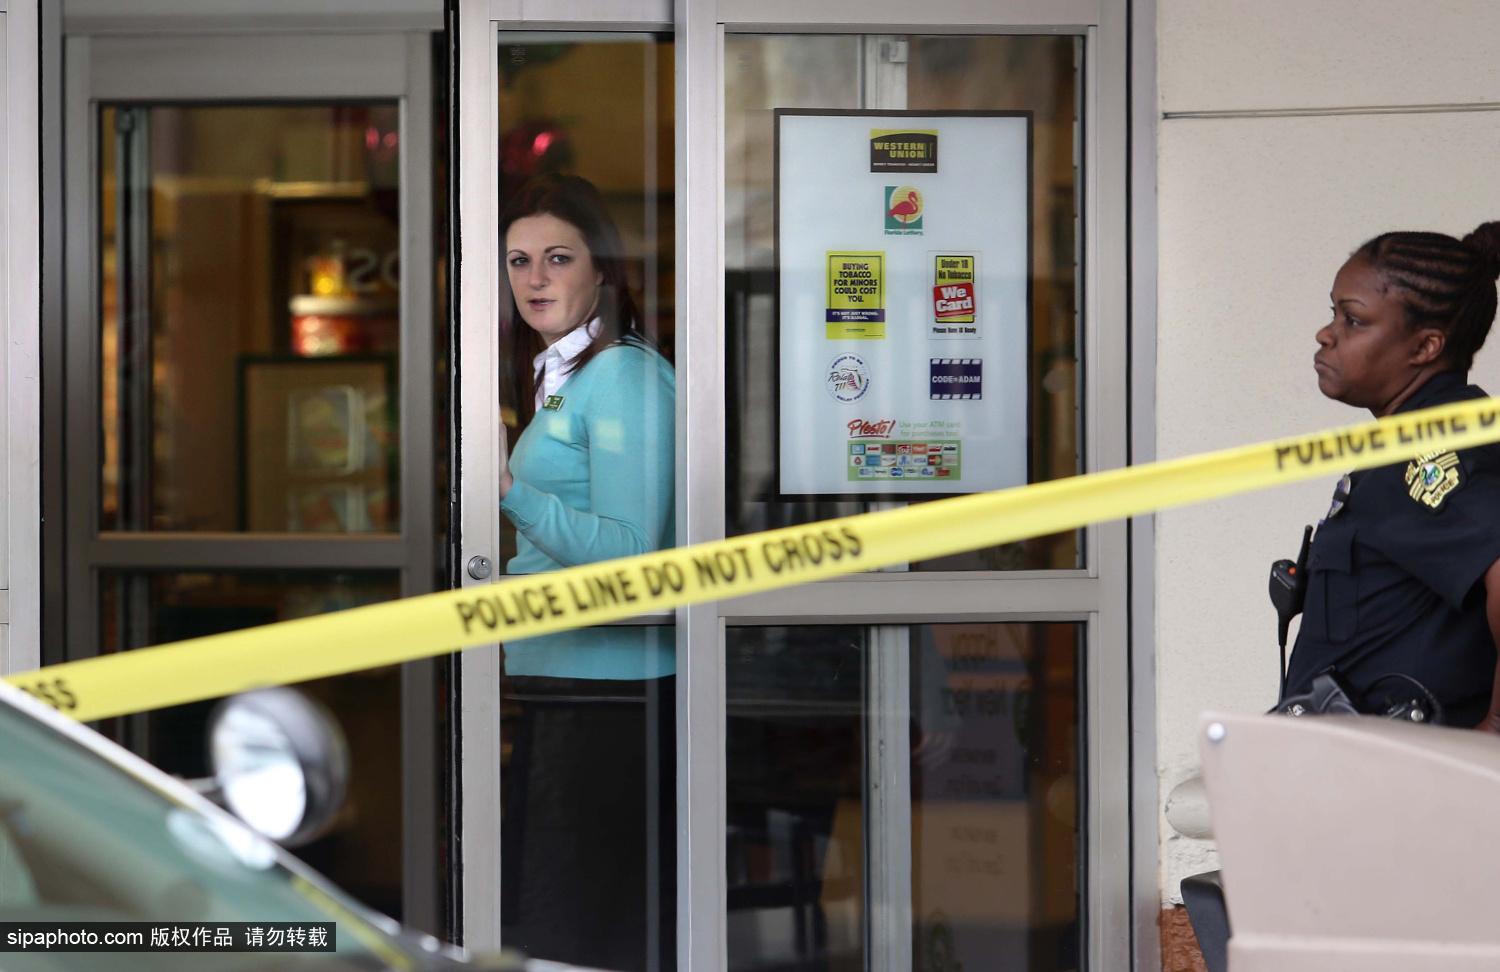 美商店内发生枪击案 一名人员受伤多名嫌疑人在逃